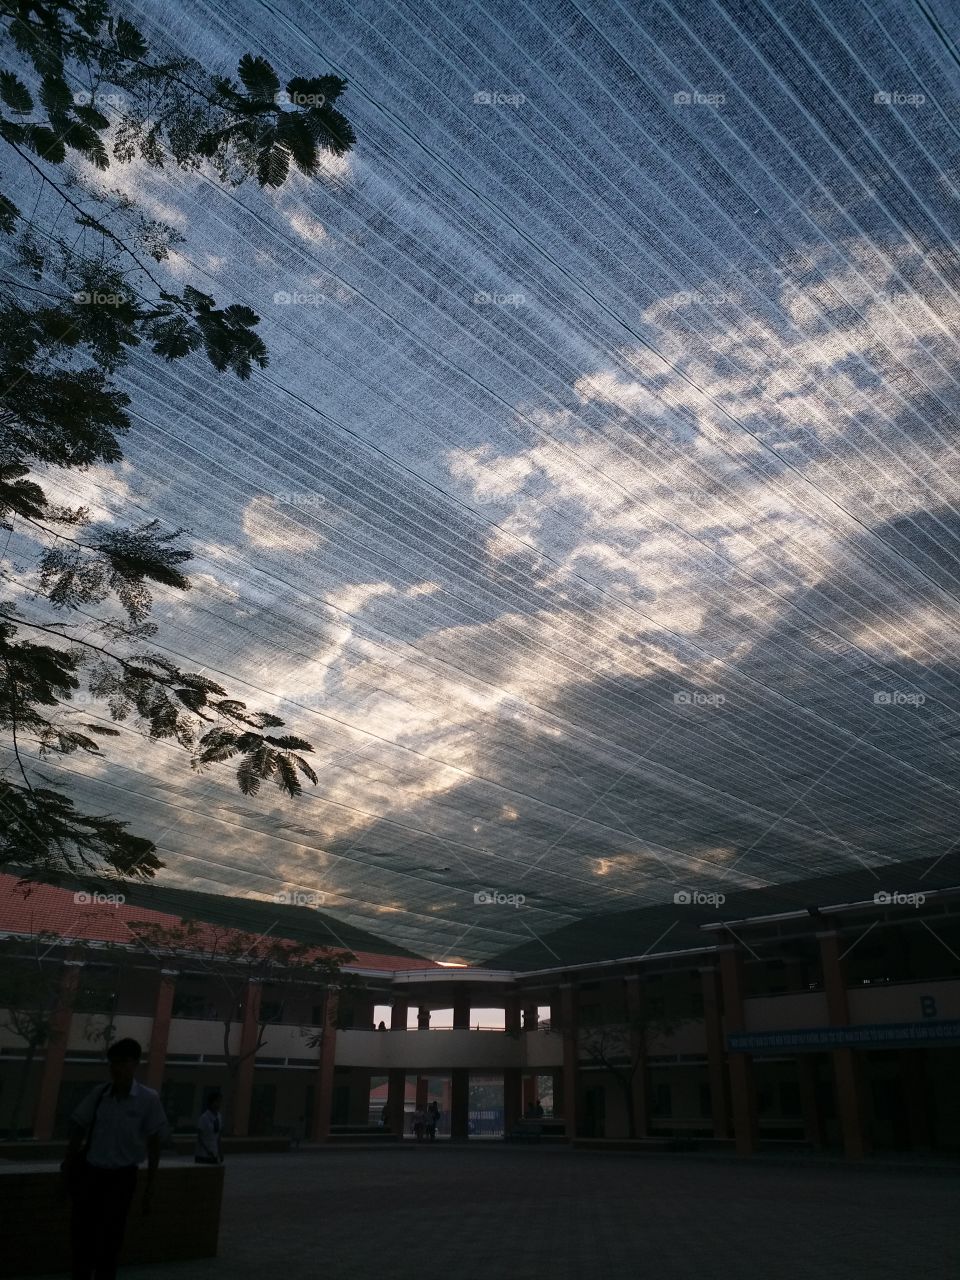 sky behind a big screen